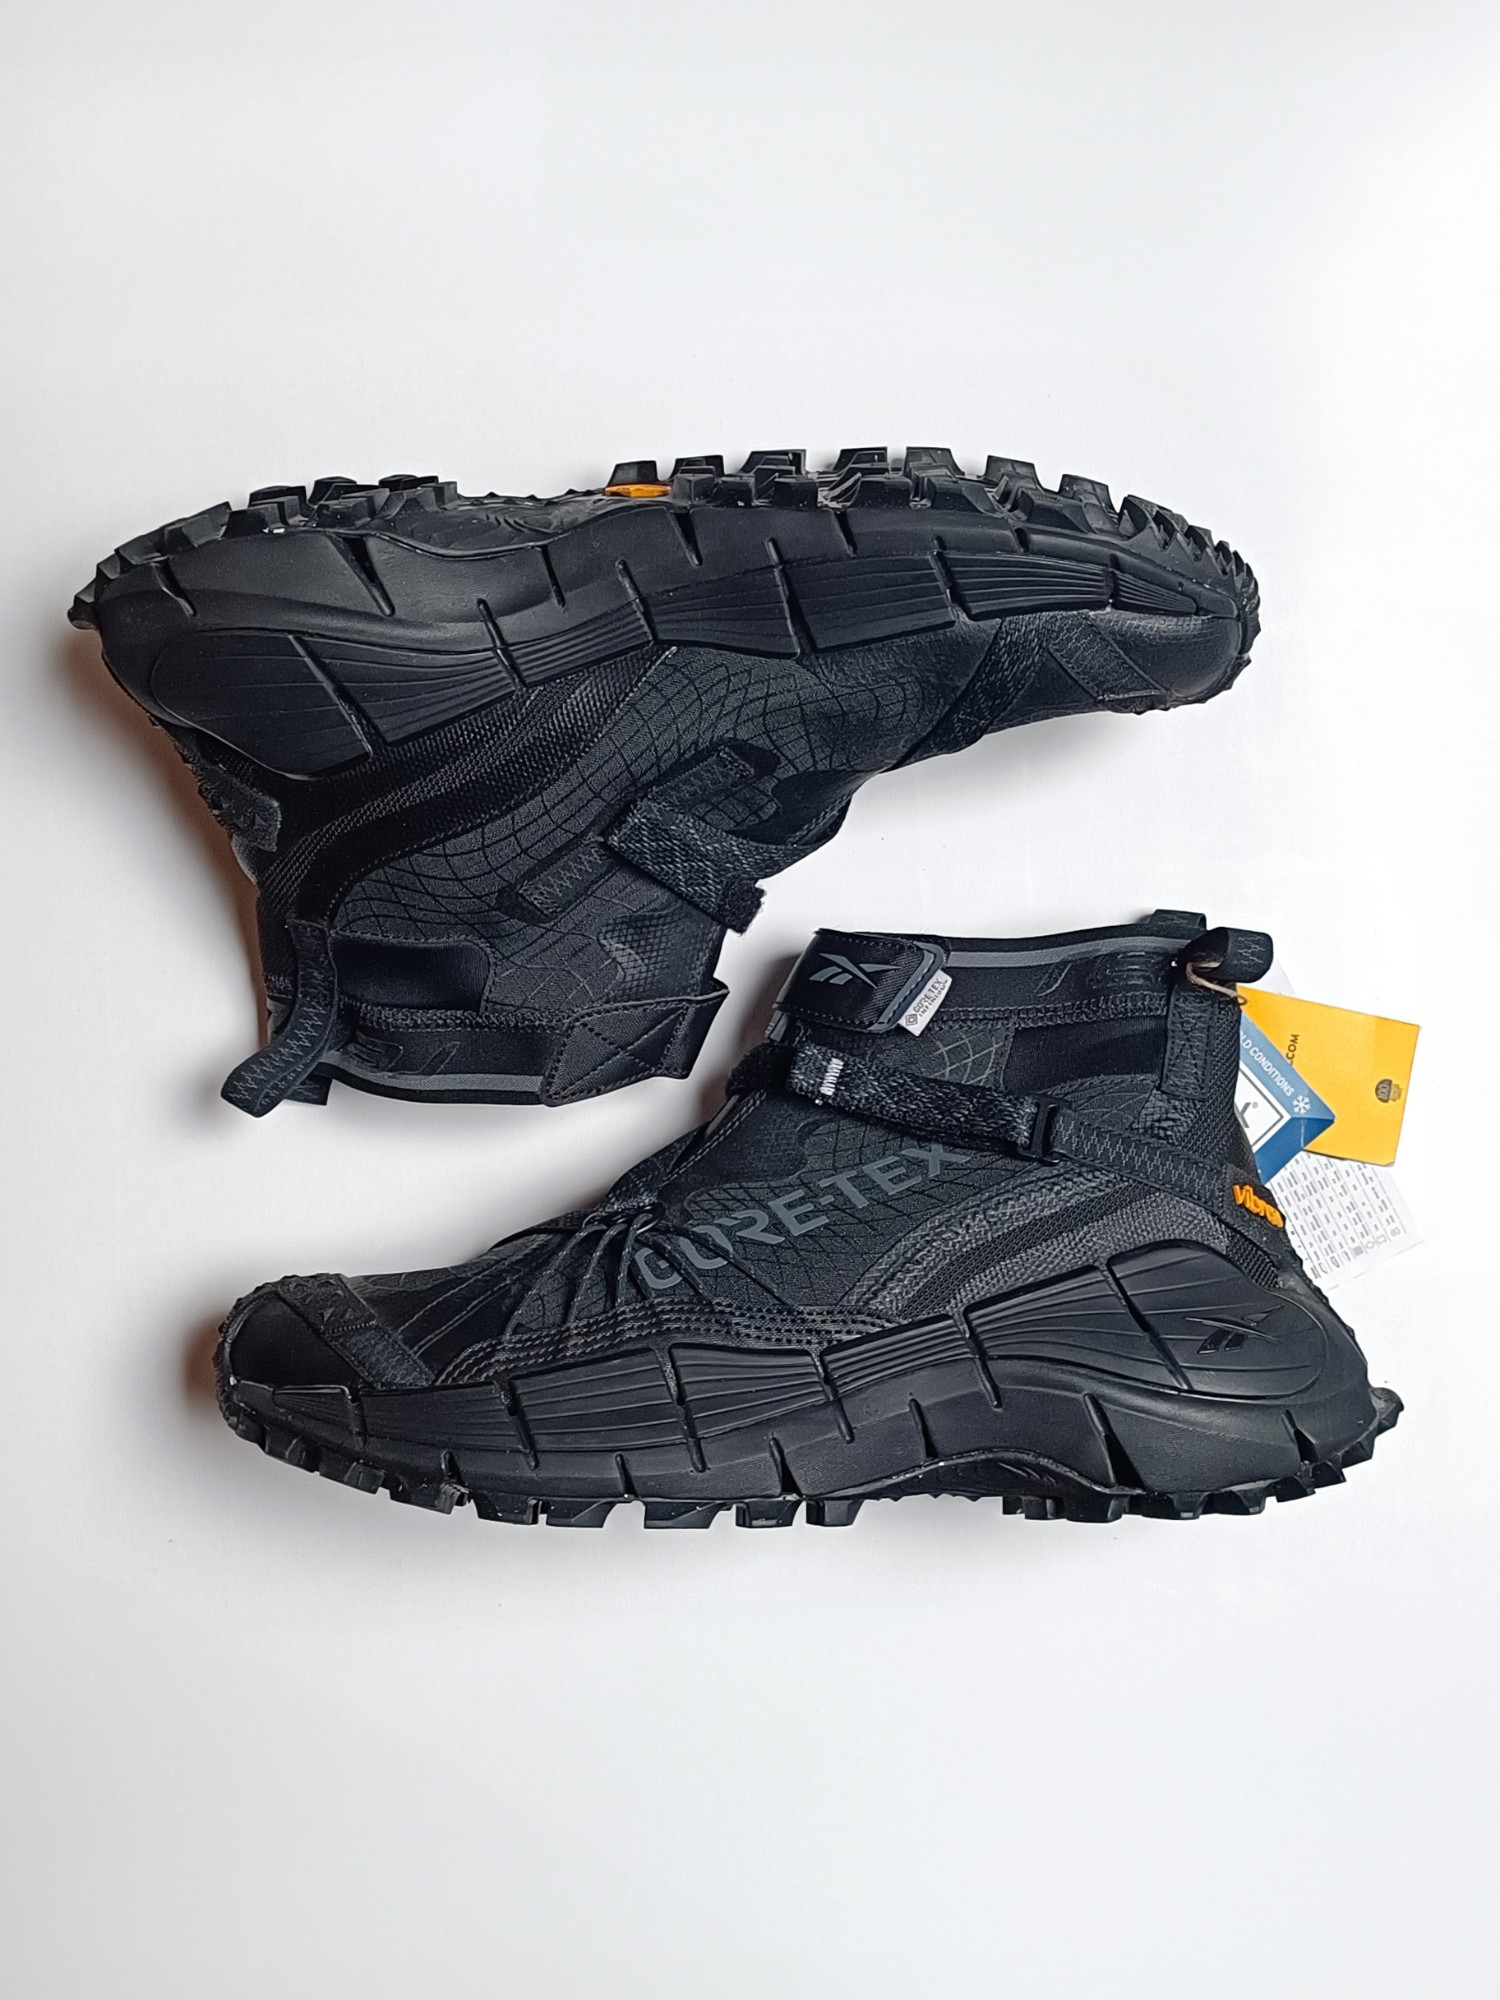 Reebok Zig Kinetica II Edge GORE-TEX 'Black' Techwear Sneakers - 2